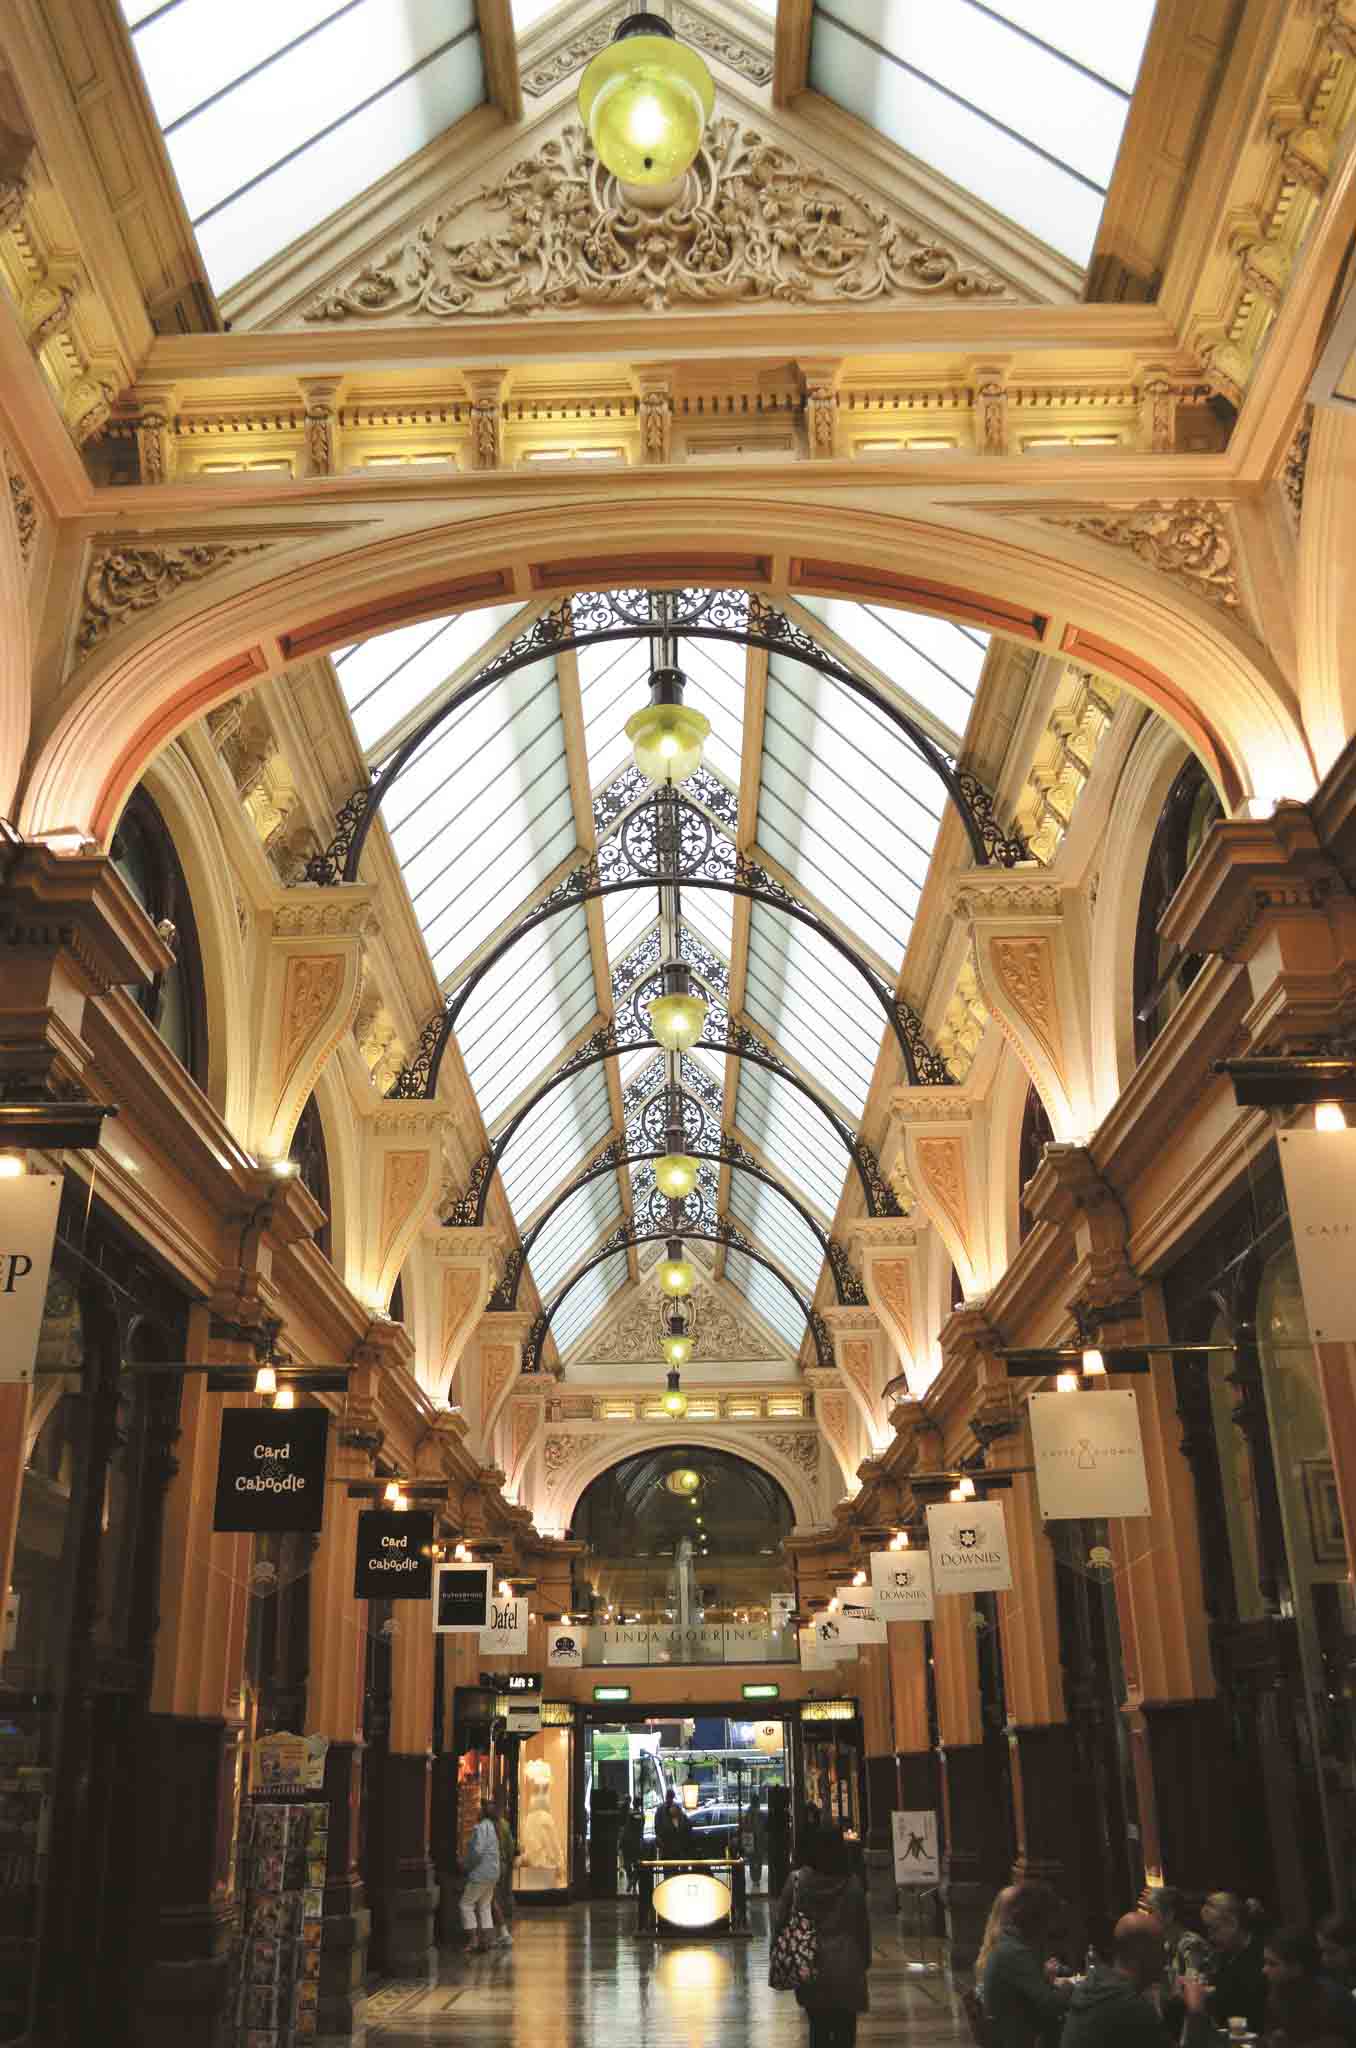 Royal Arcade | Explore Melbourne's Laneways